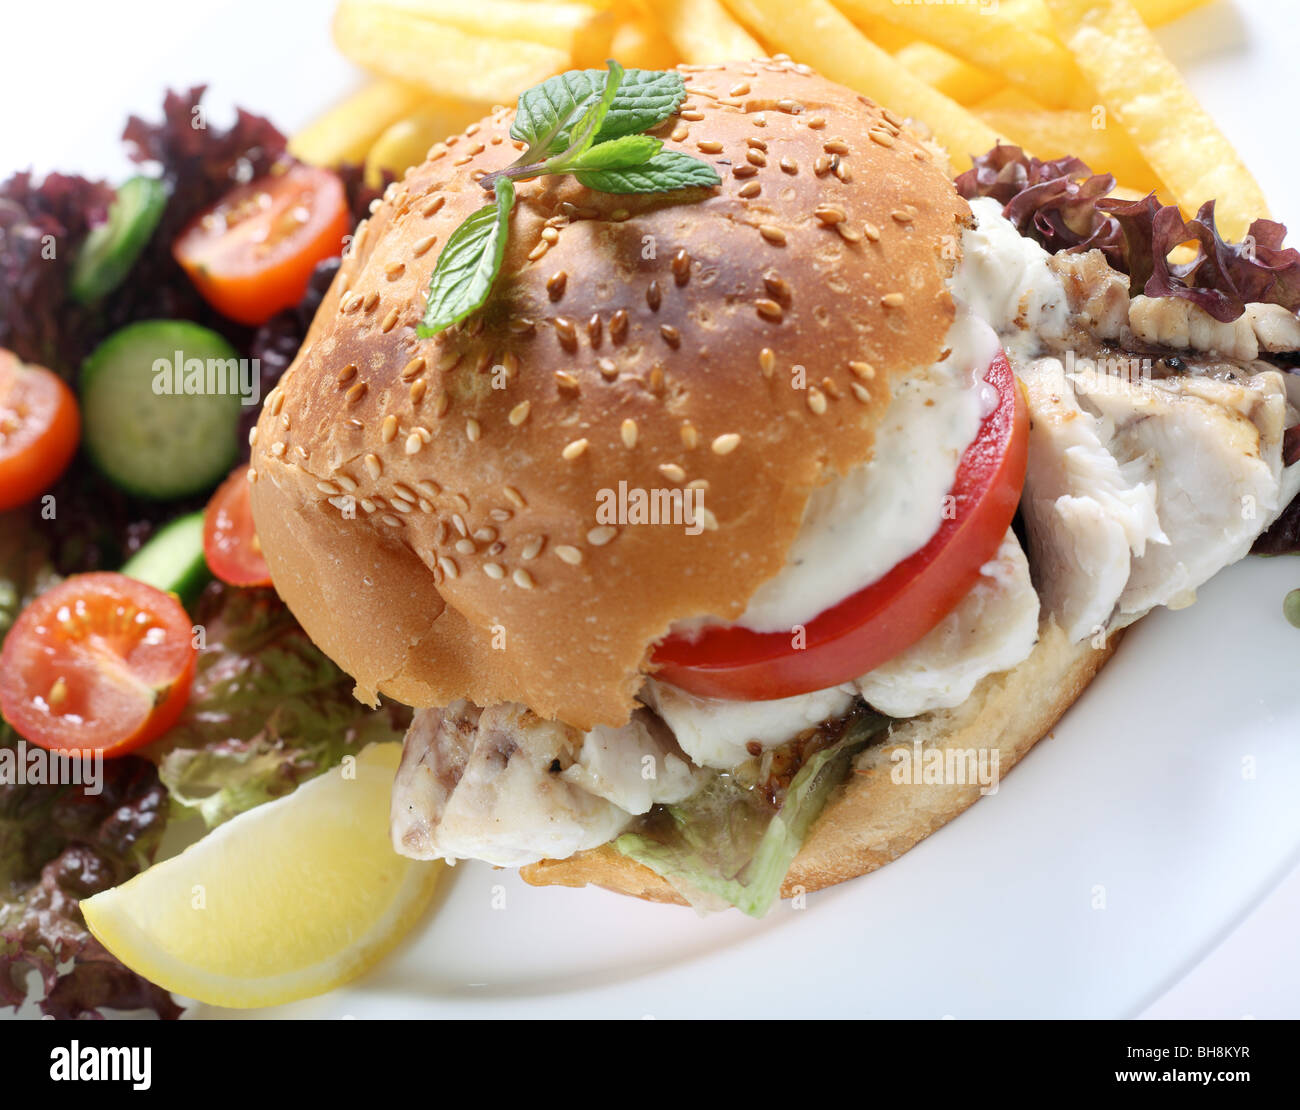 Un filet de poisson frit dans un hamburger bun, de laitue et de tomate et recouverte d'une sauce crémeuse. Banque D'Images